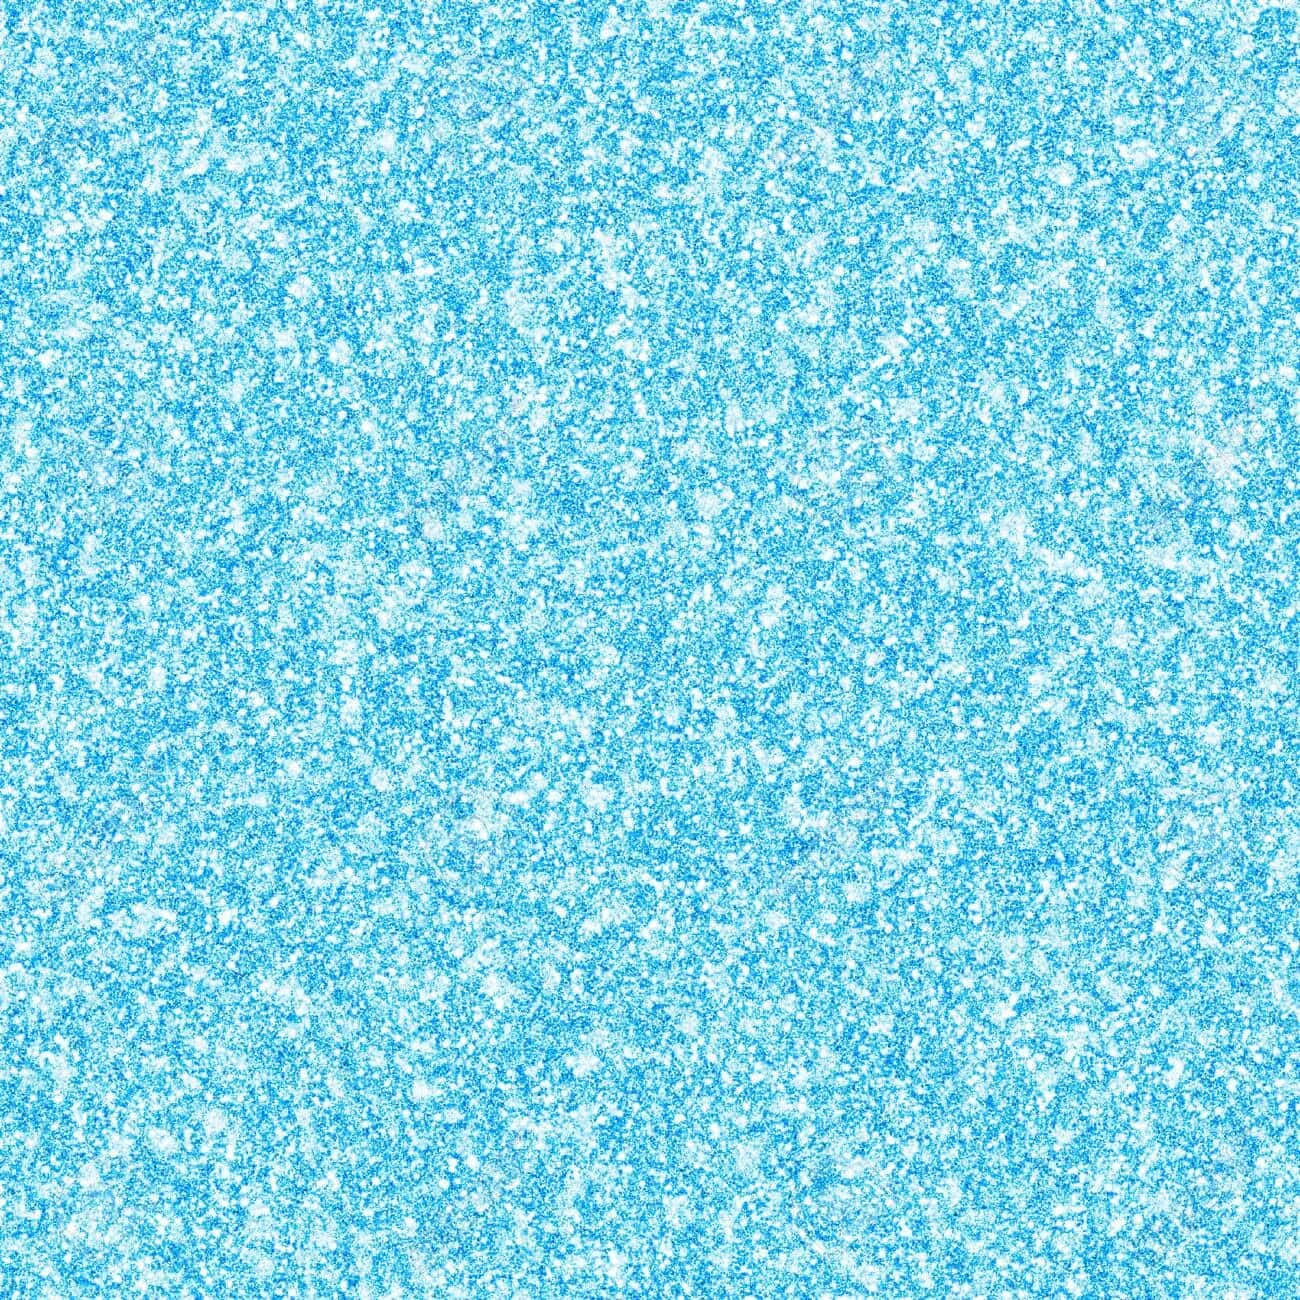 Download Sparkly Blue Background In Celeste Color